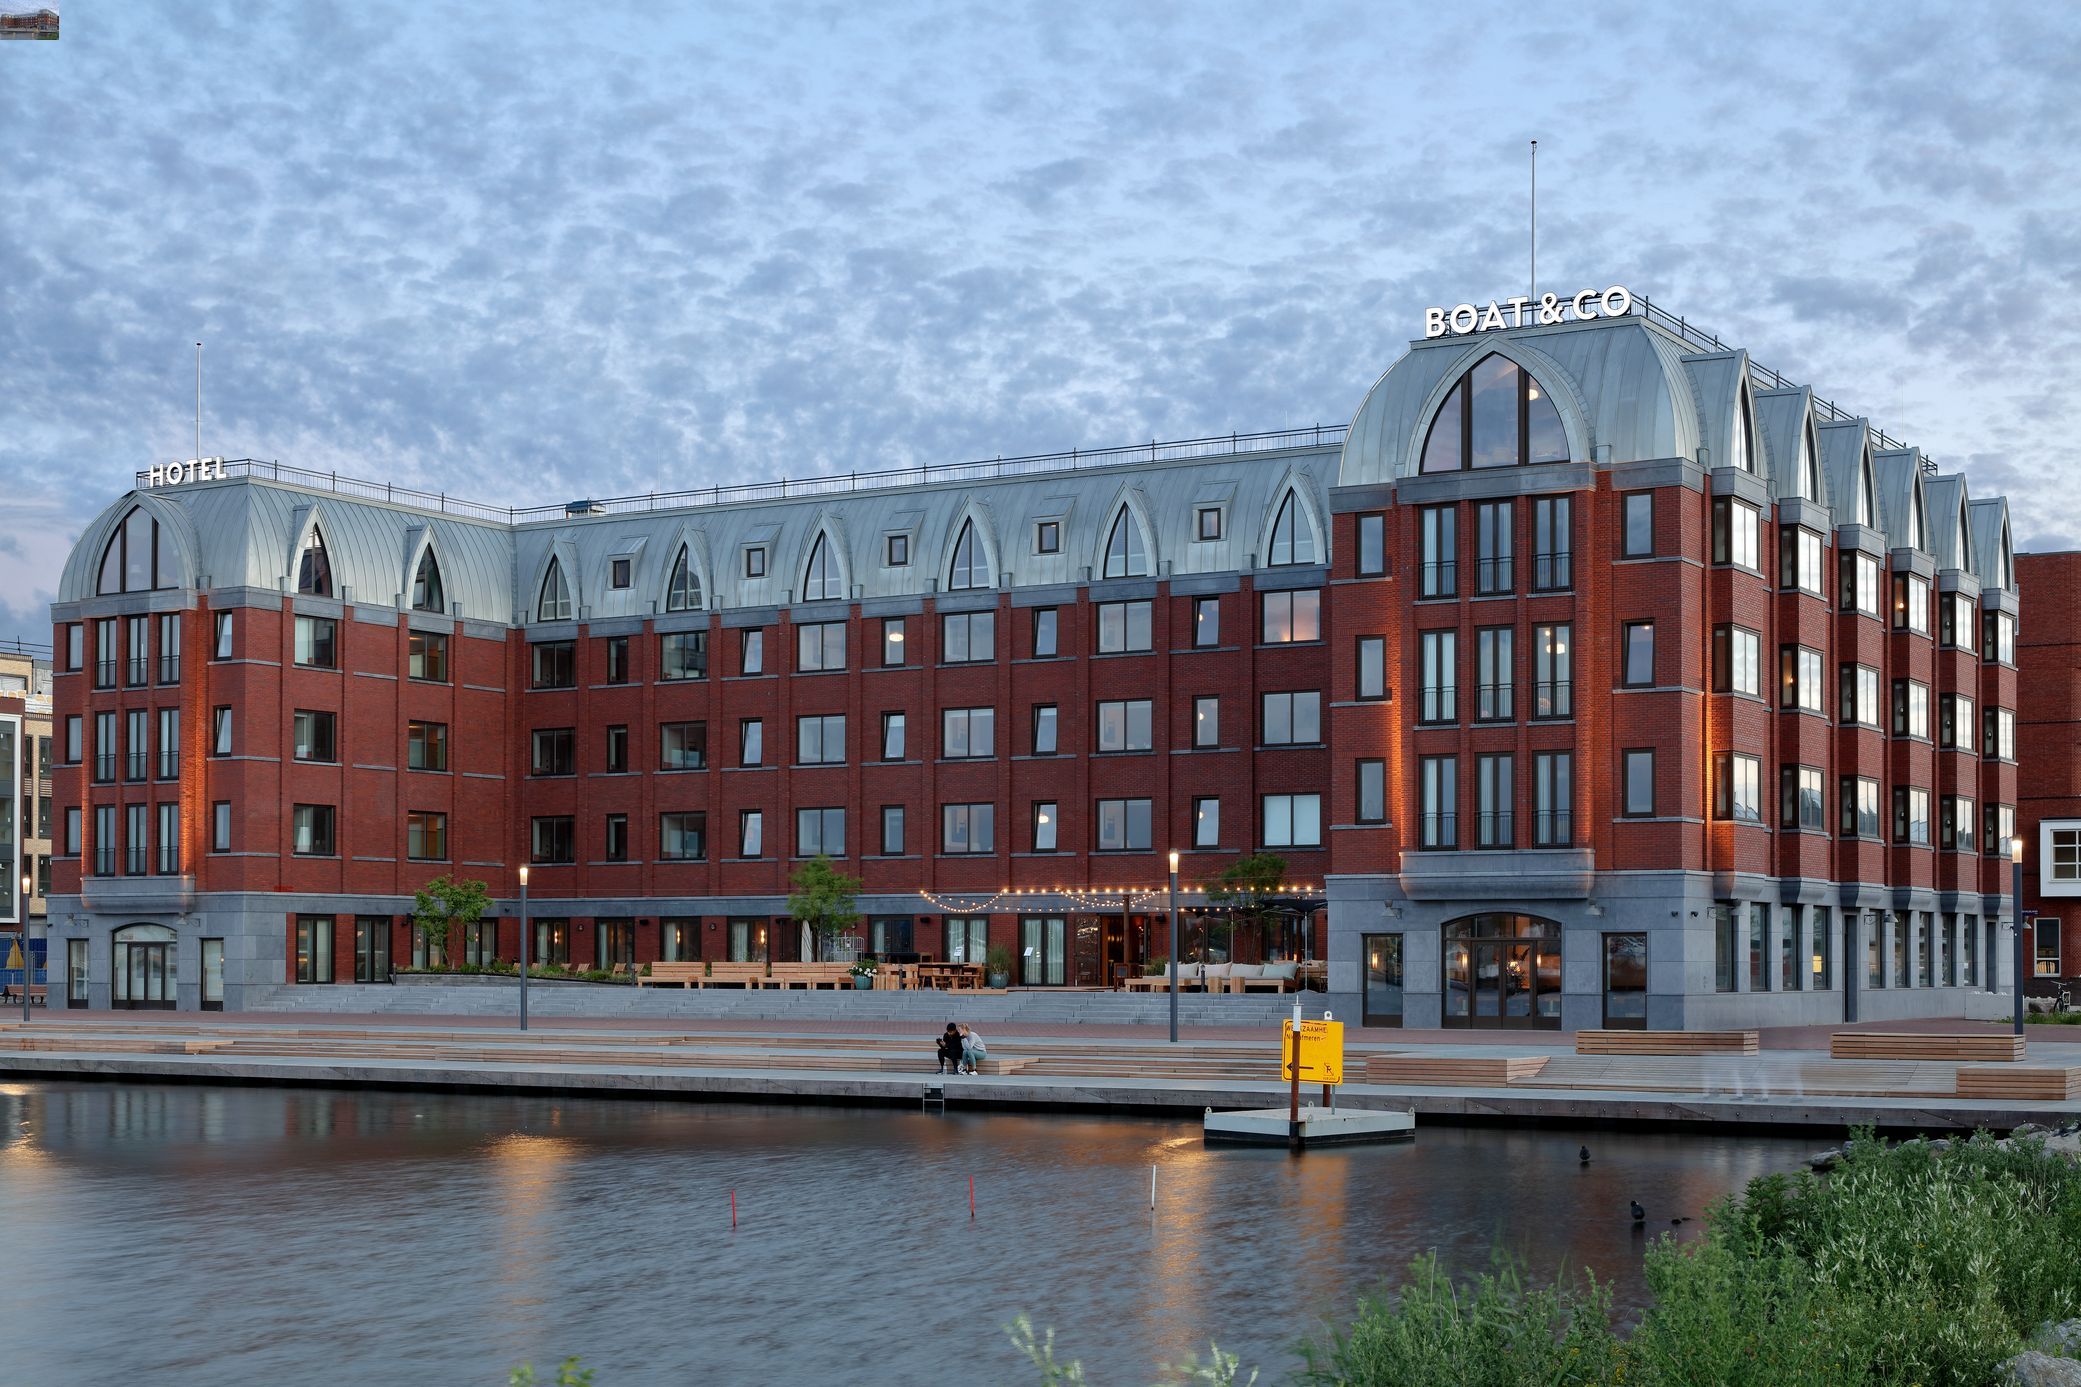 Hotel Boat & Co, Holandia, certyfikat C2C, dach z blachy RHEINZINK-CLASSIC w technologii podwójnego rąbka stojącego